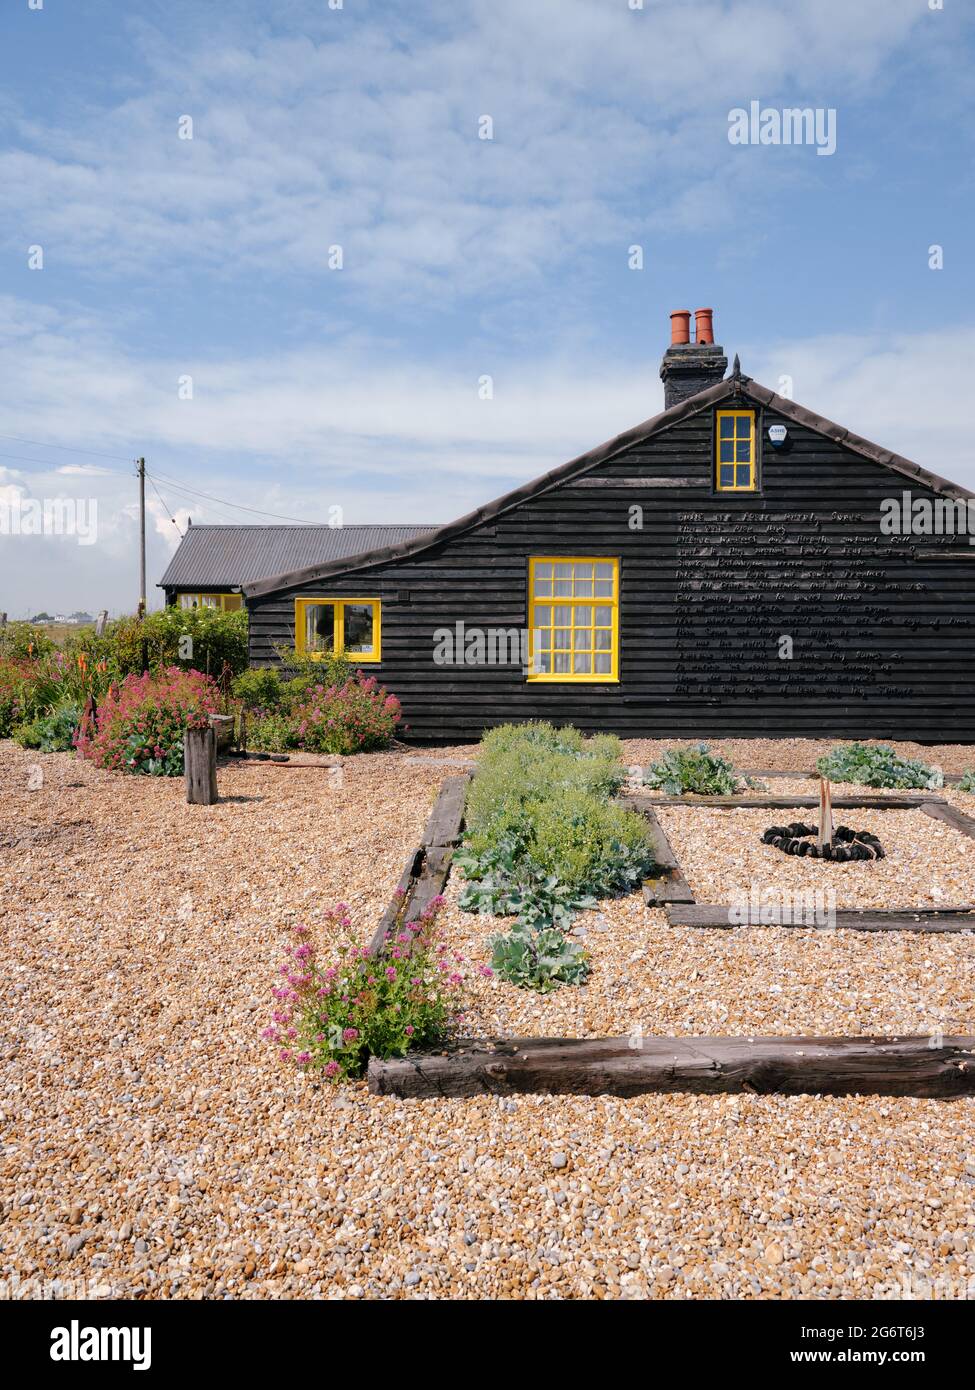 Prospect Cottage une cabane de pêcheur victorienne et un jardin de plage de galets sur la côte à Dungeness, Kent Angleterre Royaume-Uni été 2021 - la maison de Derek Jarman Banque D'Images